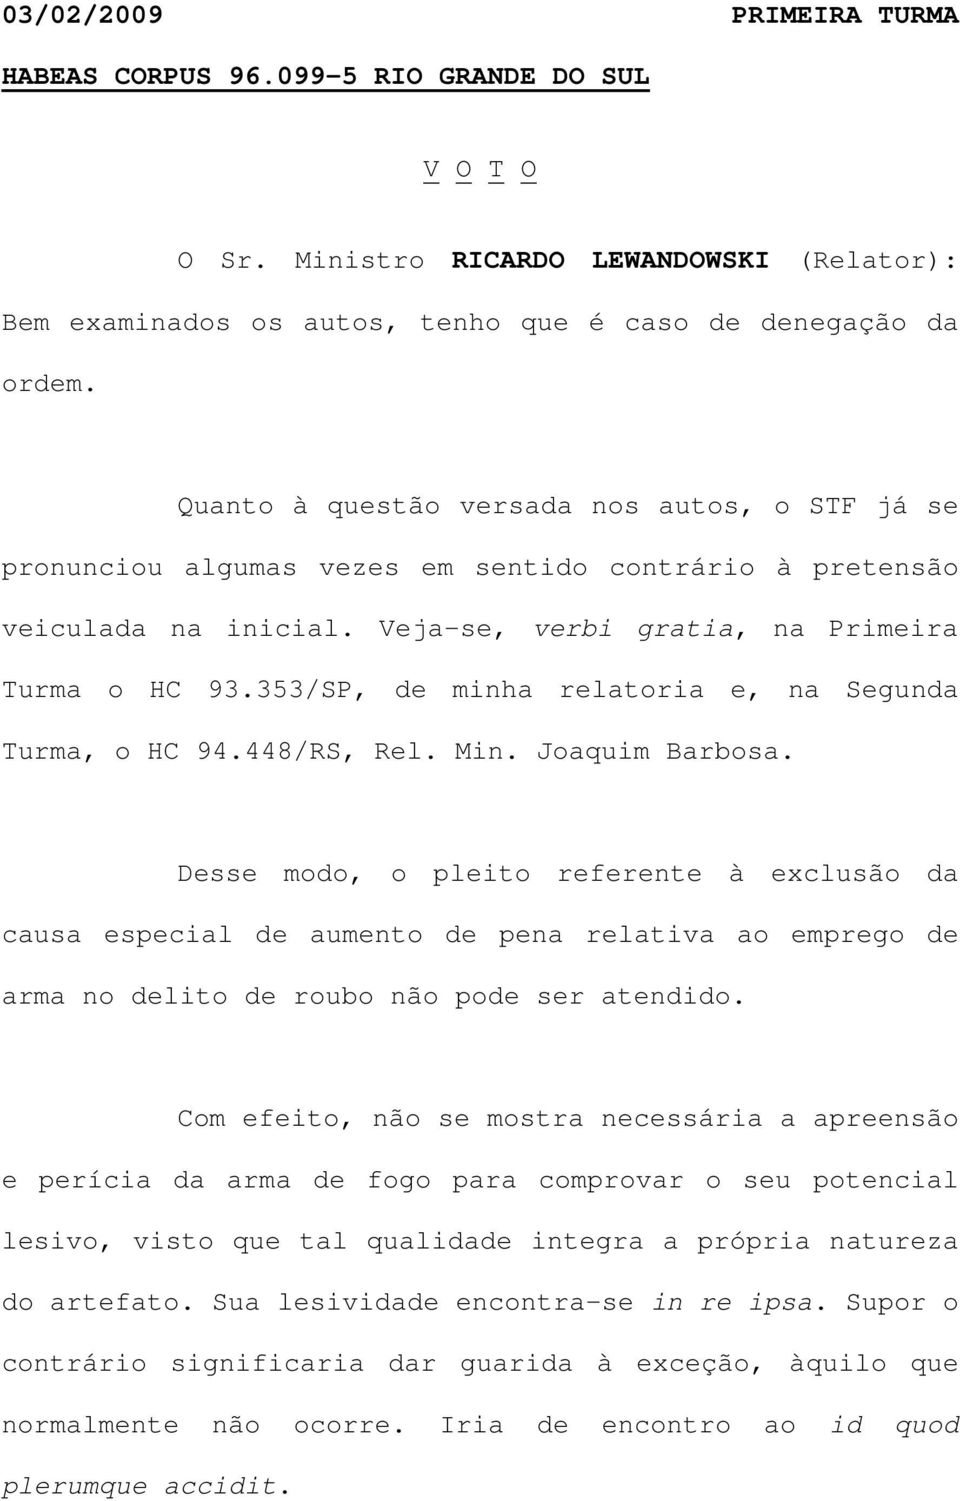 353/SP, de minha relatoria e, na Segunda Turma, o HC 94.448/RS, Rel. Min. Joaquim Barbosa.